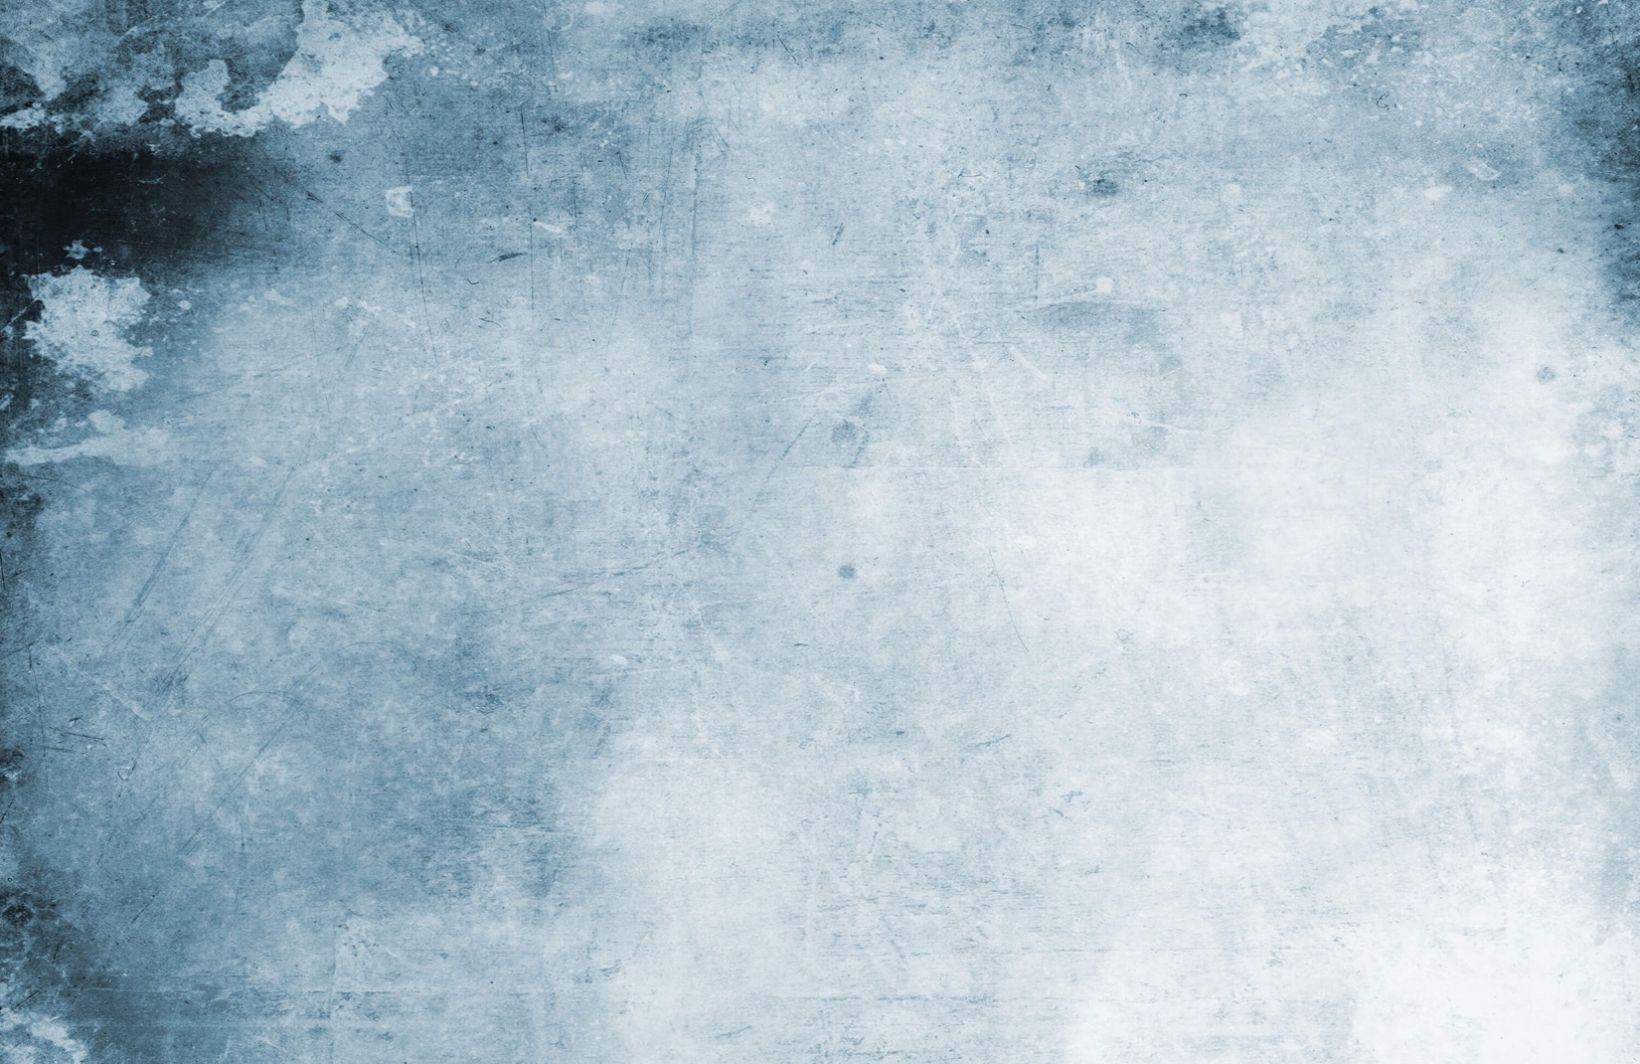 1640x1064 Bức tranh tường hình nền màu nước Grunge màu xanh nhạt.  Tranh tường